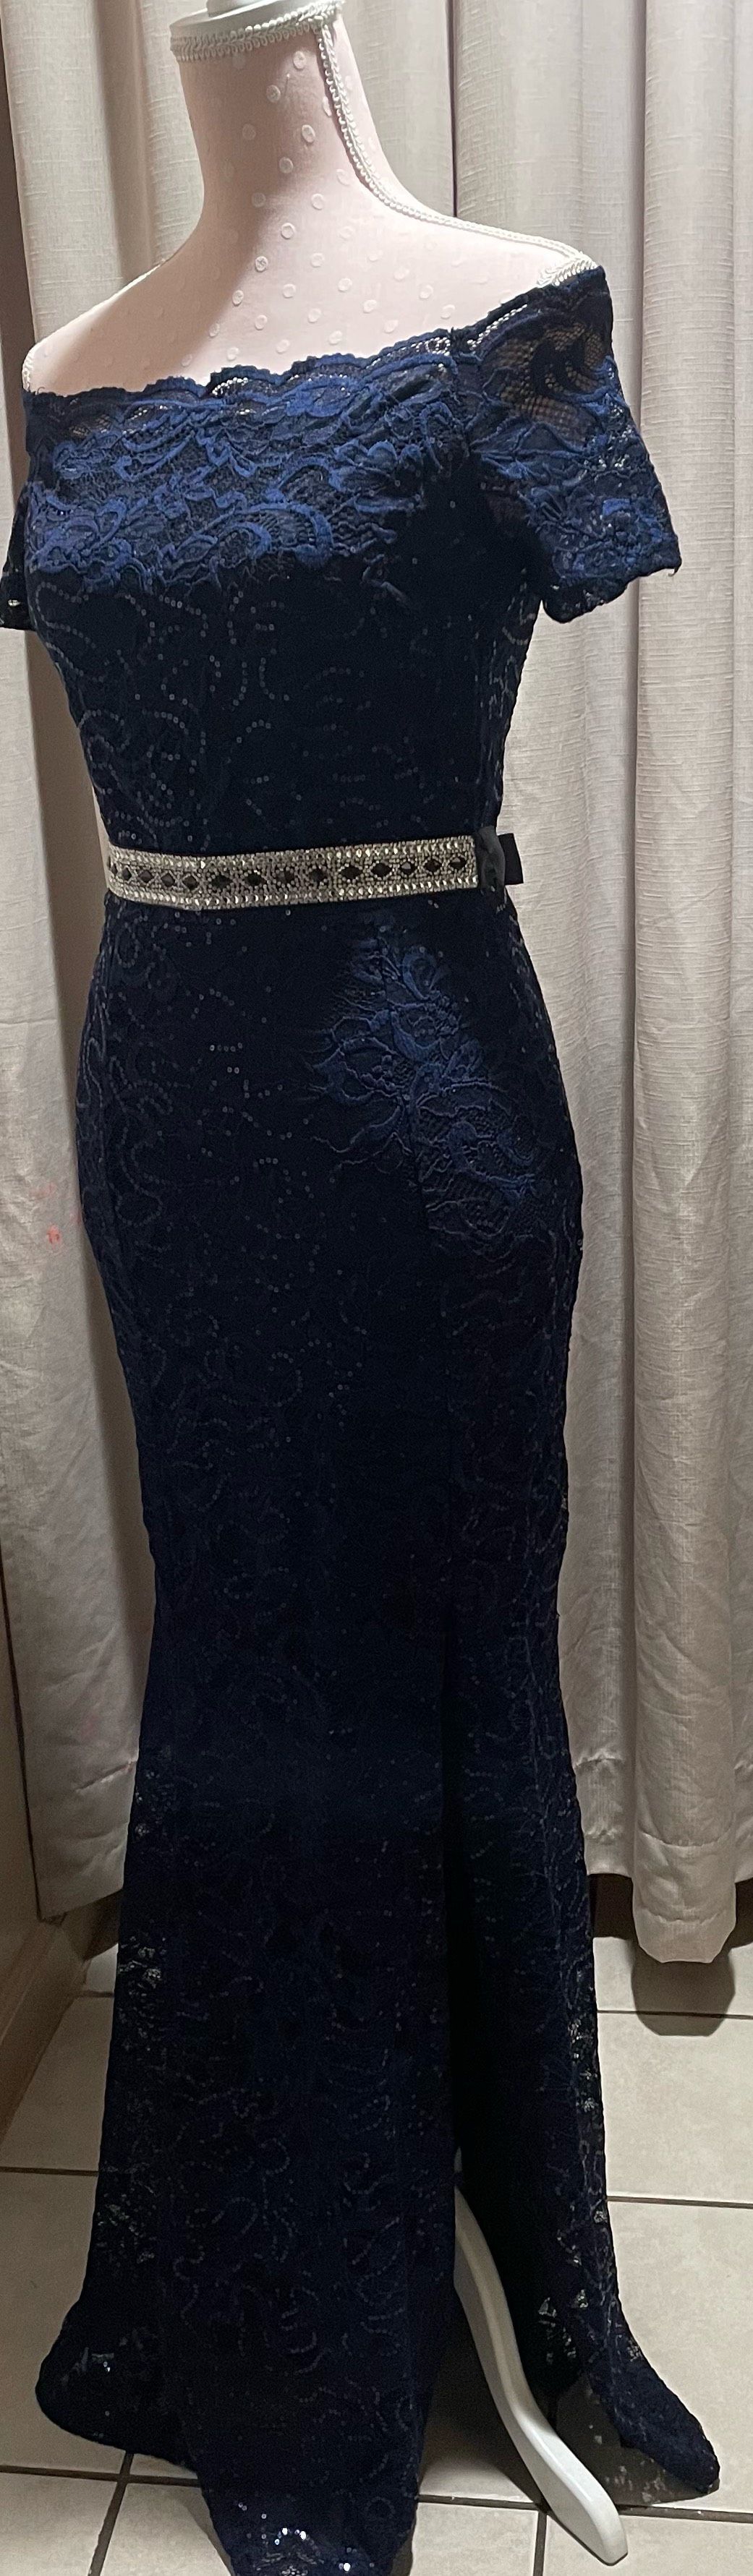 Size 10 Off The Shoulder Navy Blue Side Slit Dress on Queenly